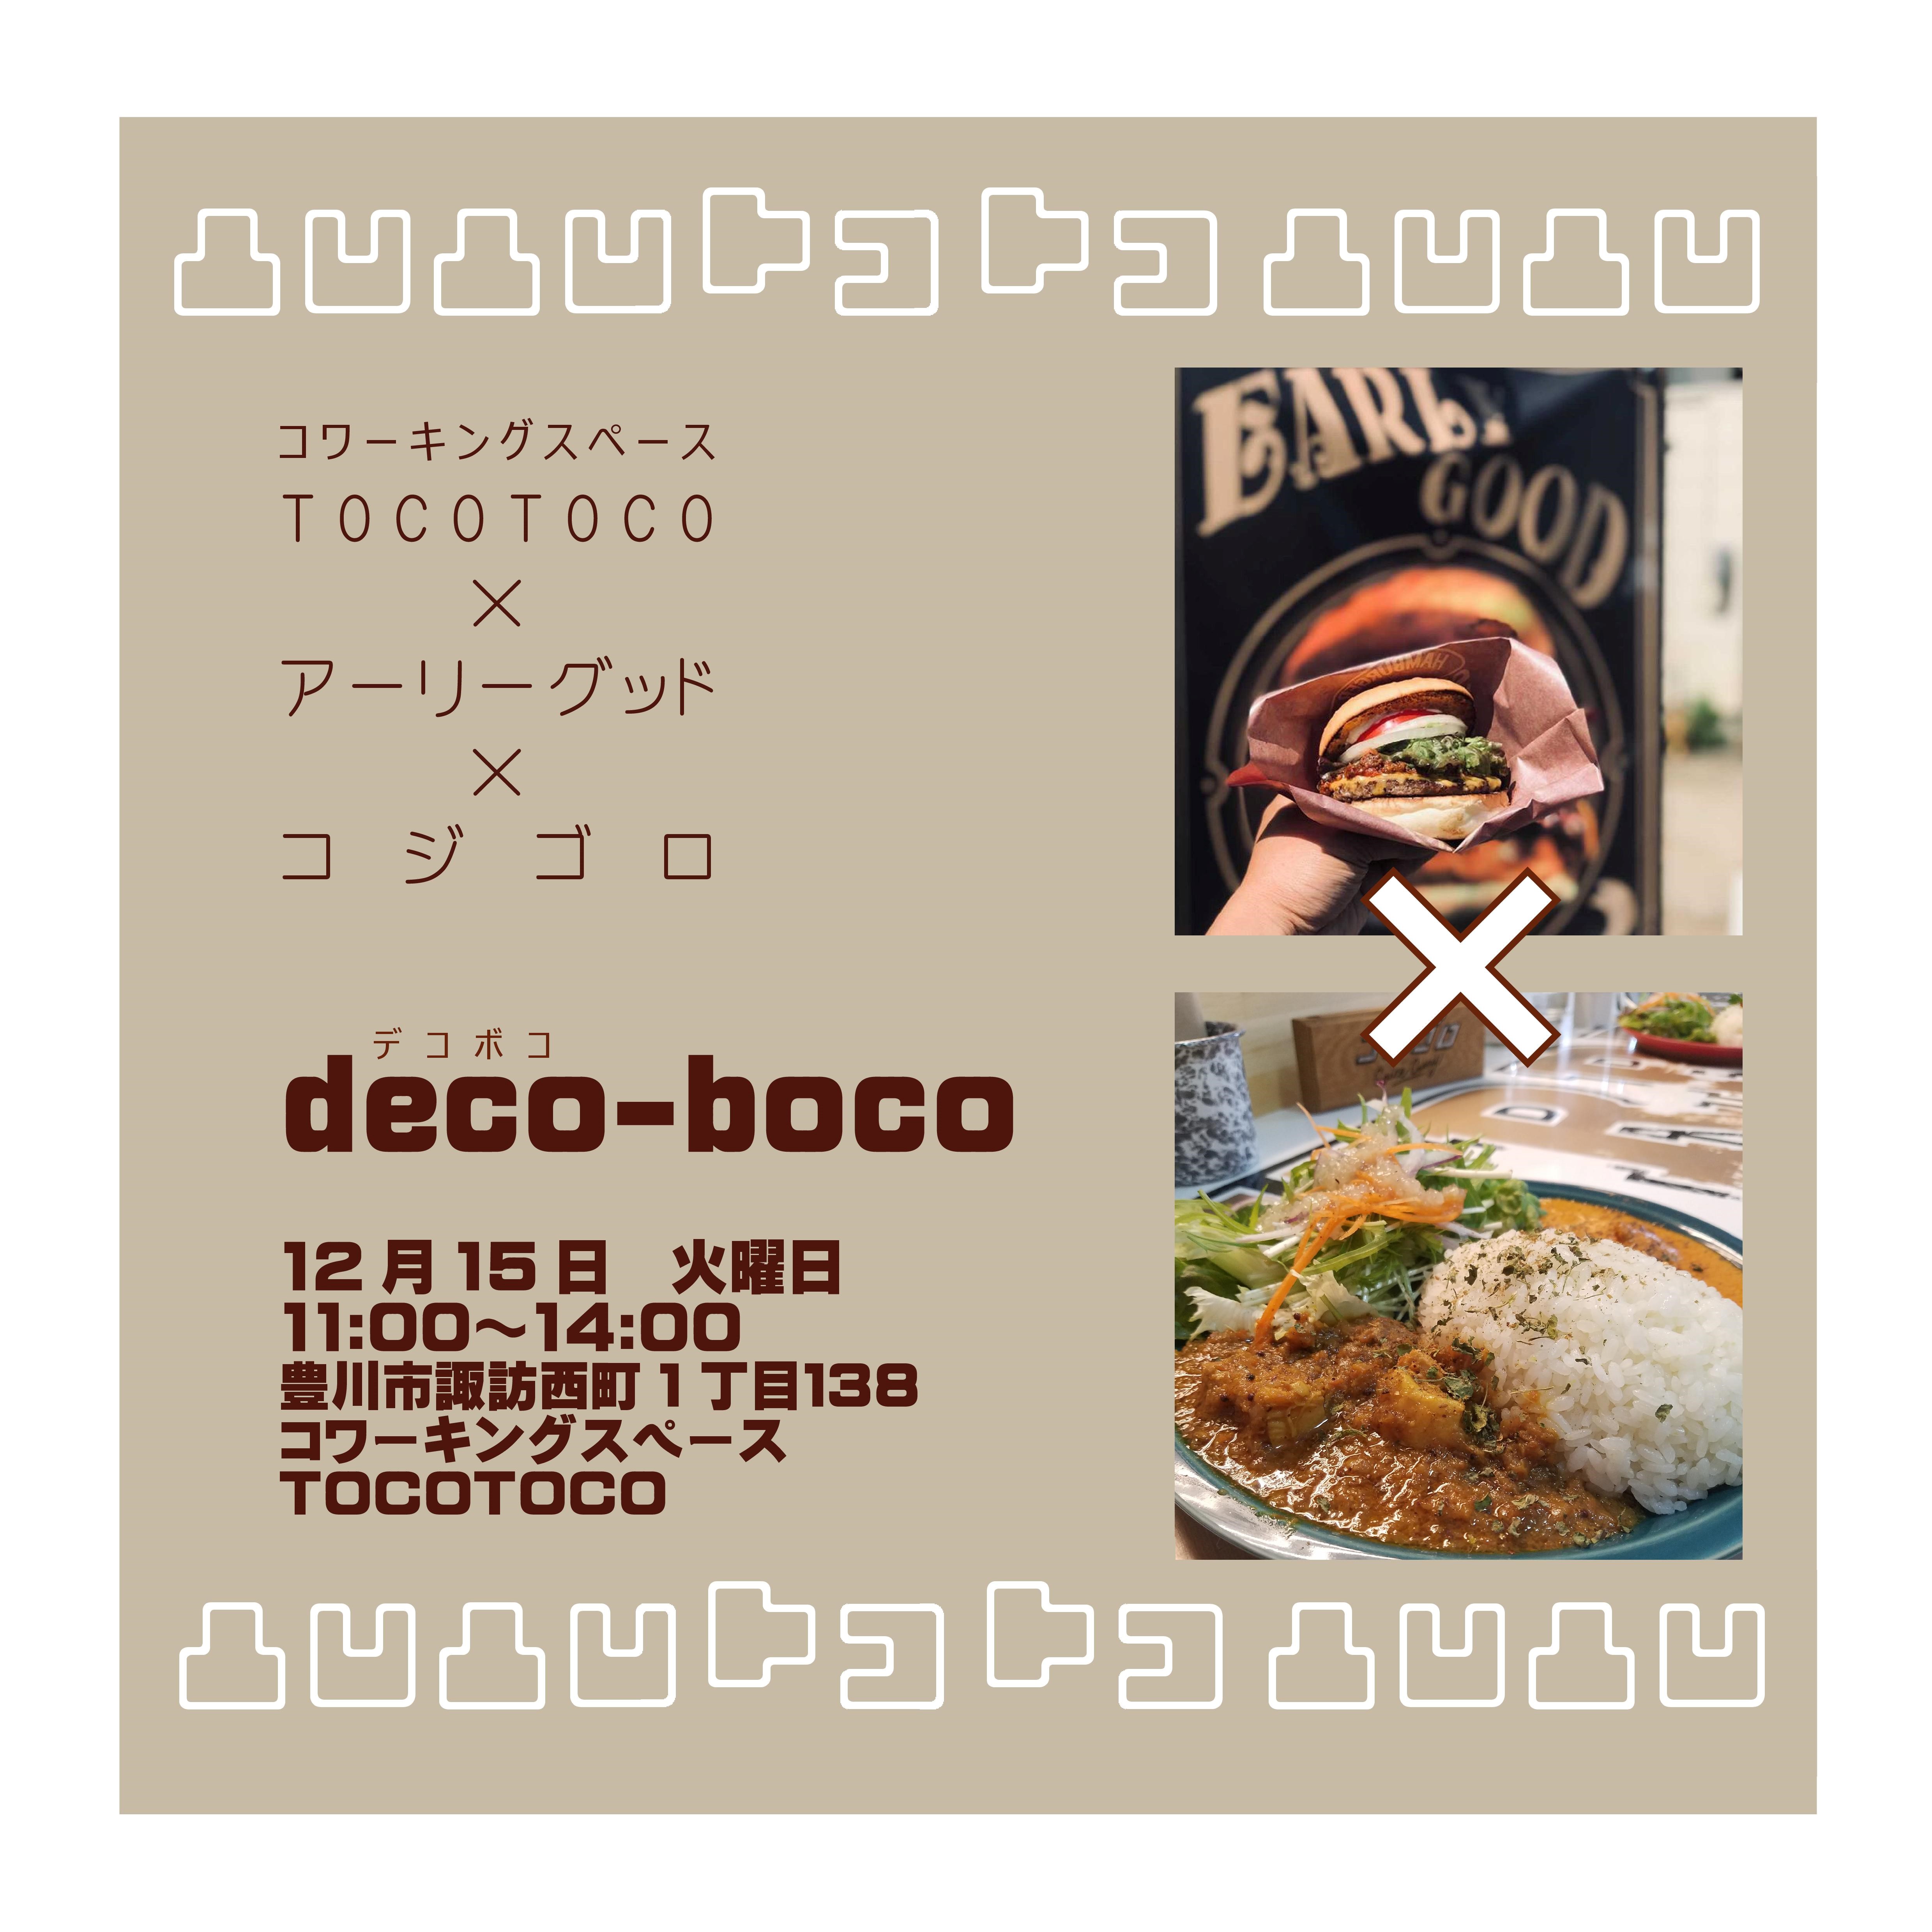 ランチタイムイベント「deco-boco」